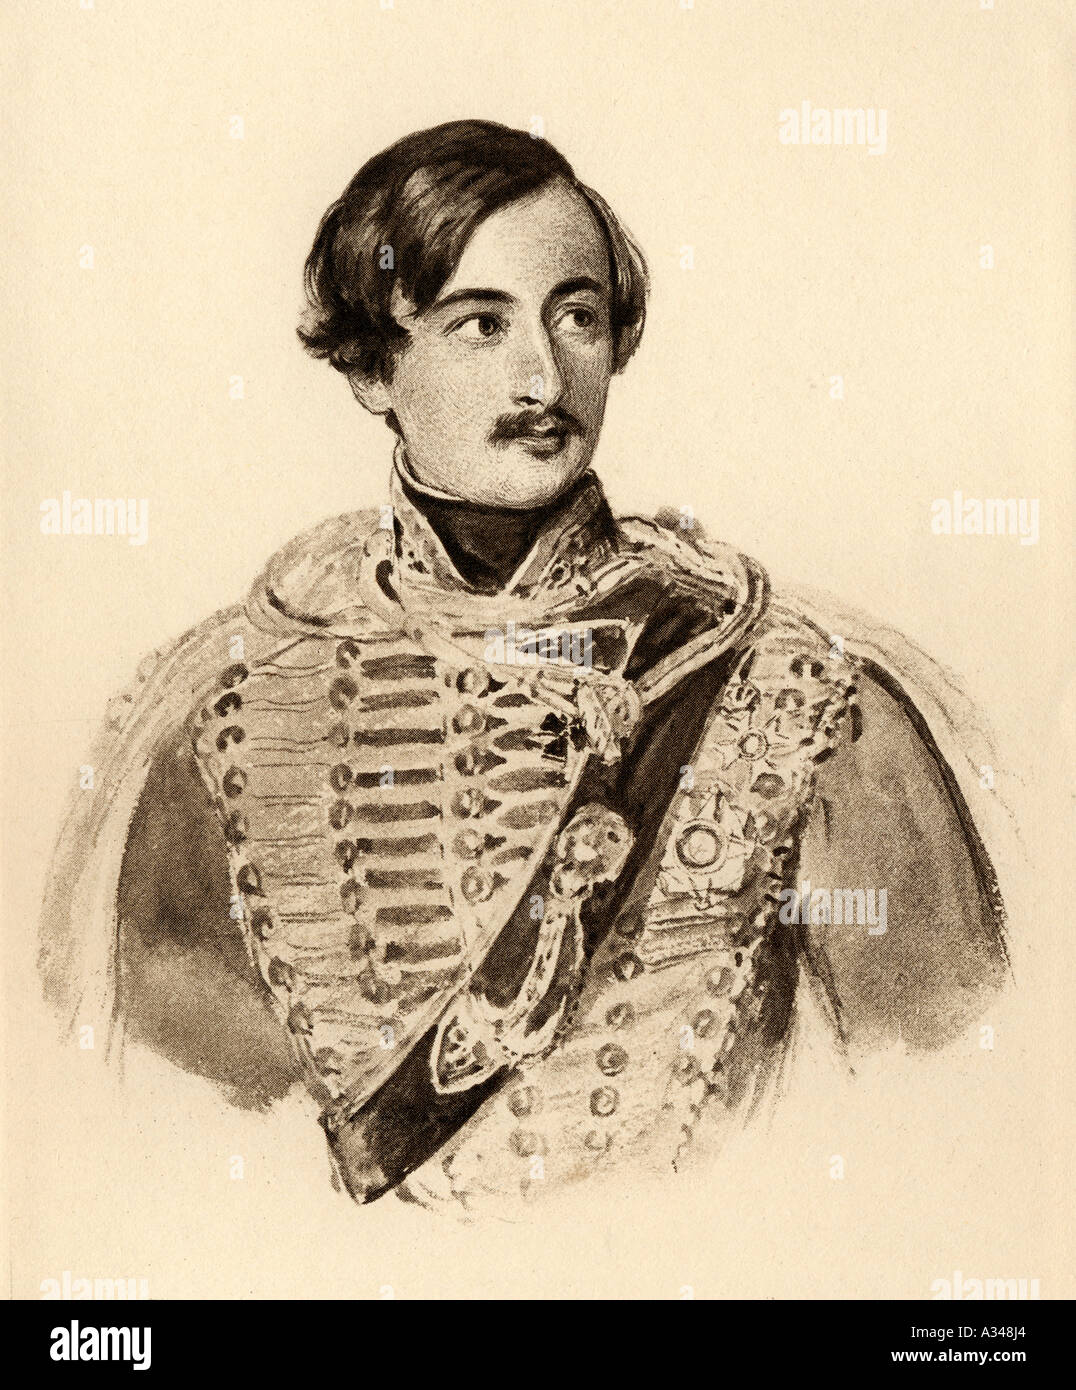 Konstantin Albrecht Graf Alexander von Mensdorff-Pouilly, Fürst von Dietrichstein zu Nikolsburg 1814-1871. Österreichischer General, Diplomat und Politiker Stockfoto